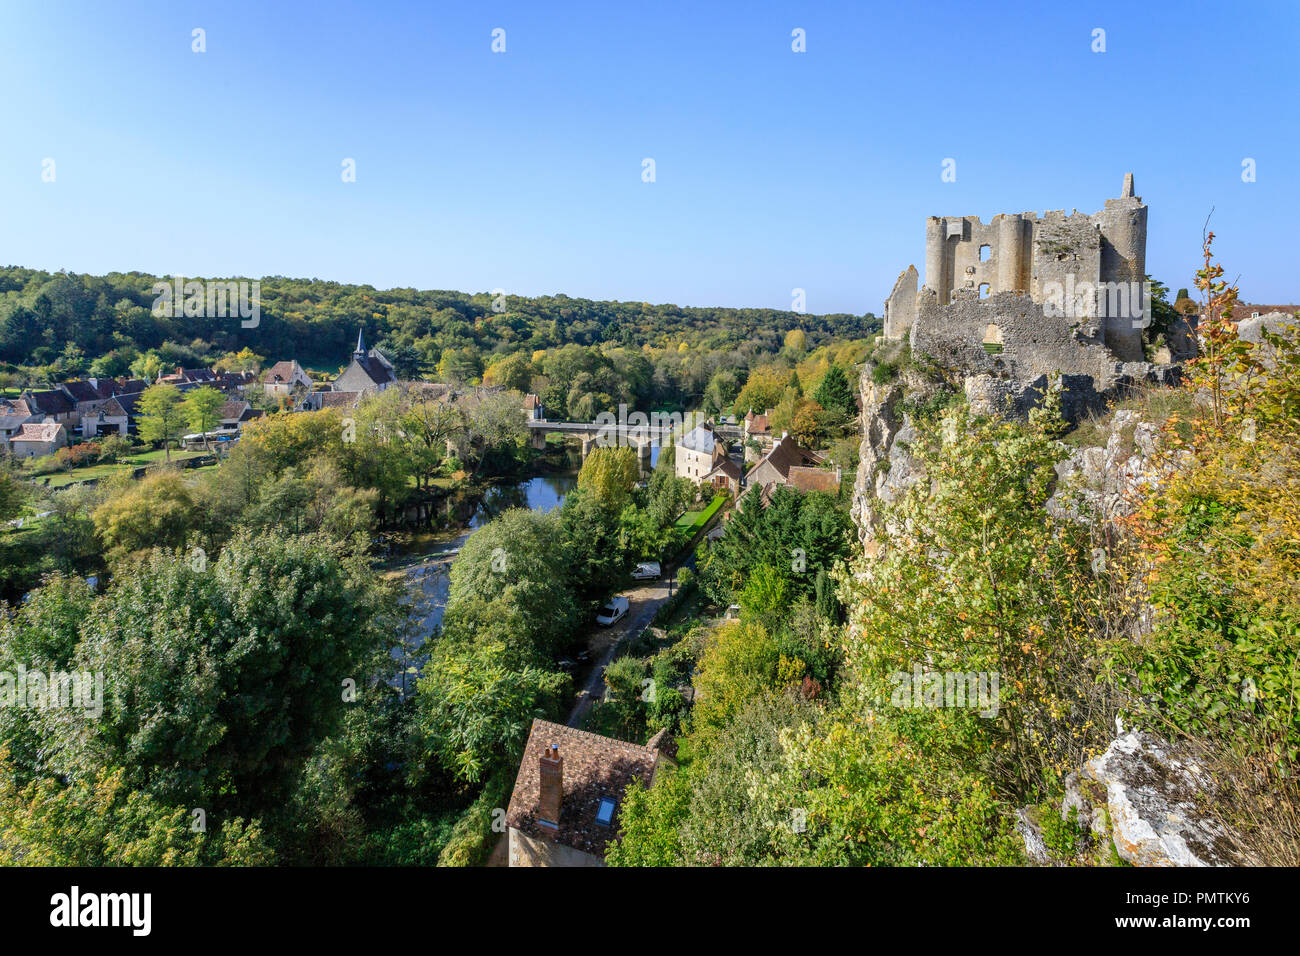 Francia, Vienne, angoli sur l'Anglin, etichettati Les Plus Beaux Villages de France (i più bei villaggi di Francia), le rovine del castello overlooki Foto Stock